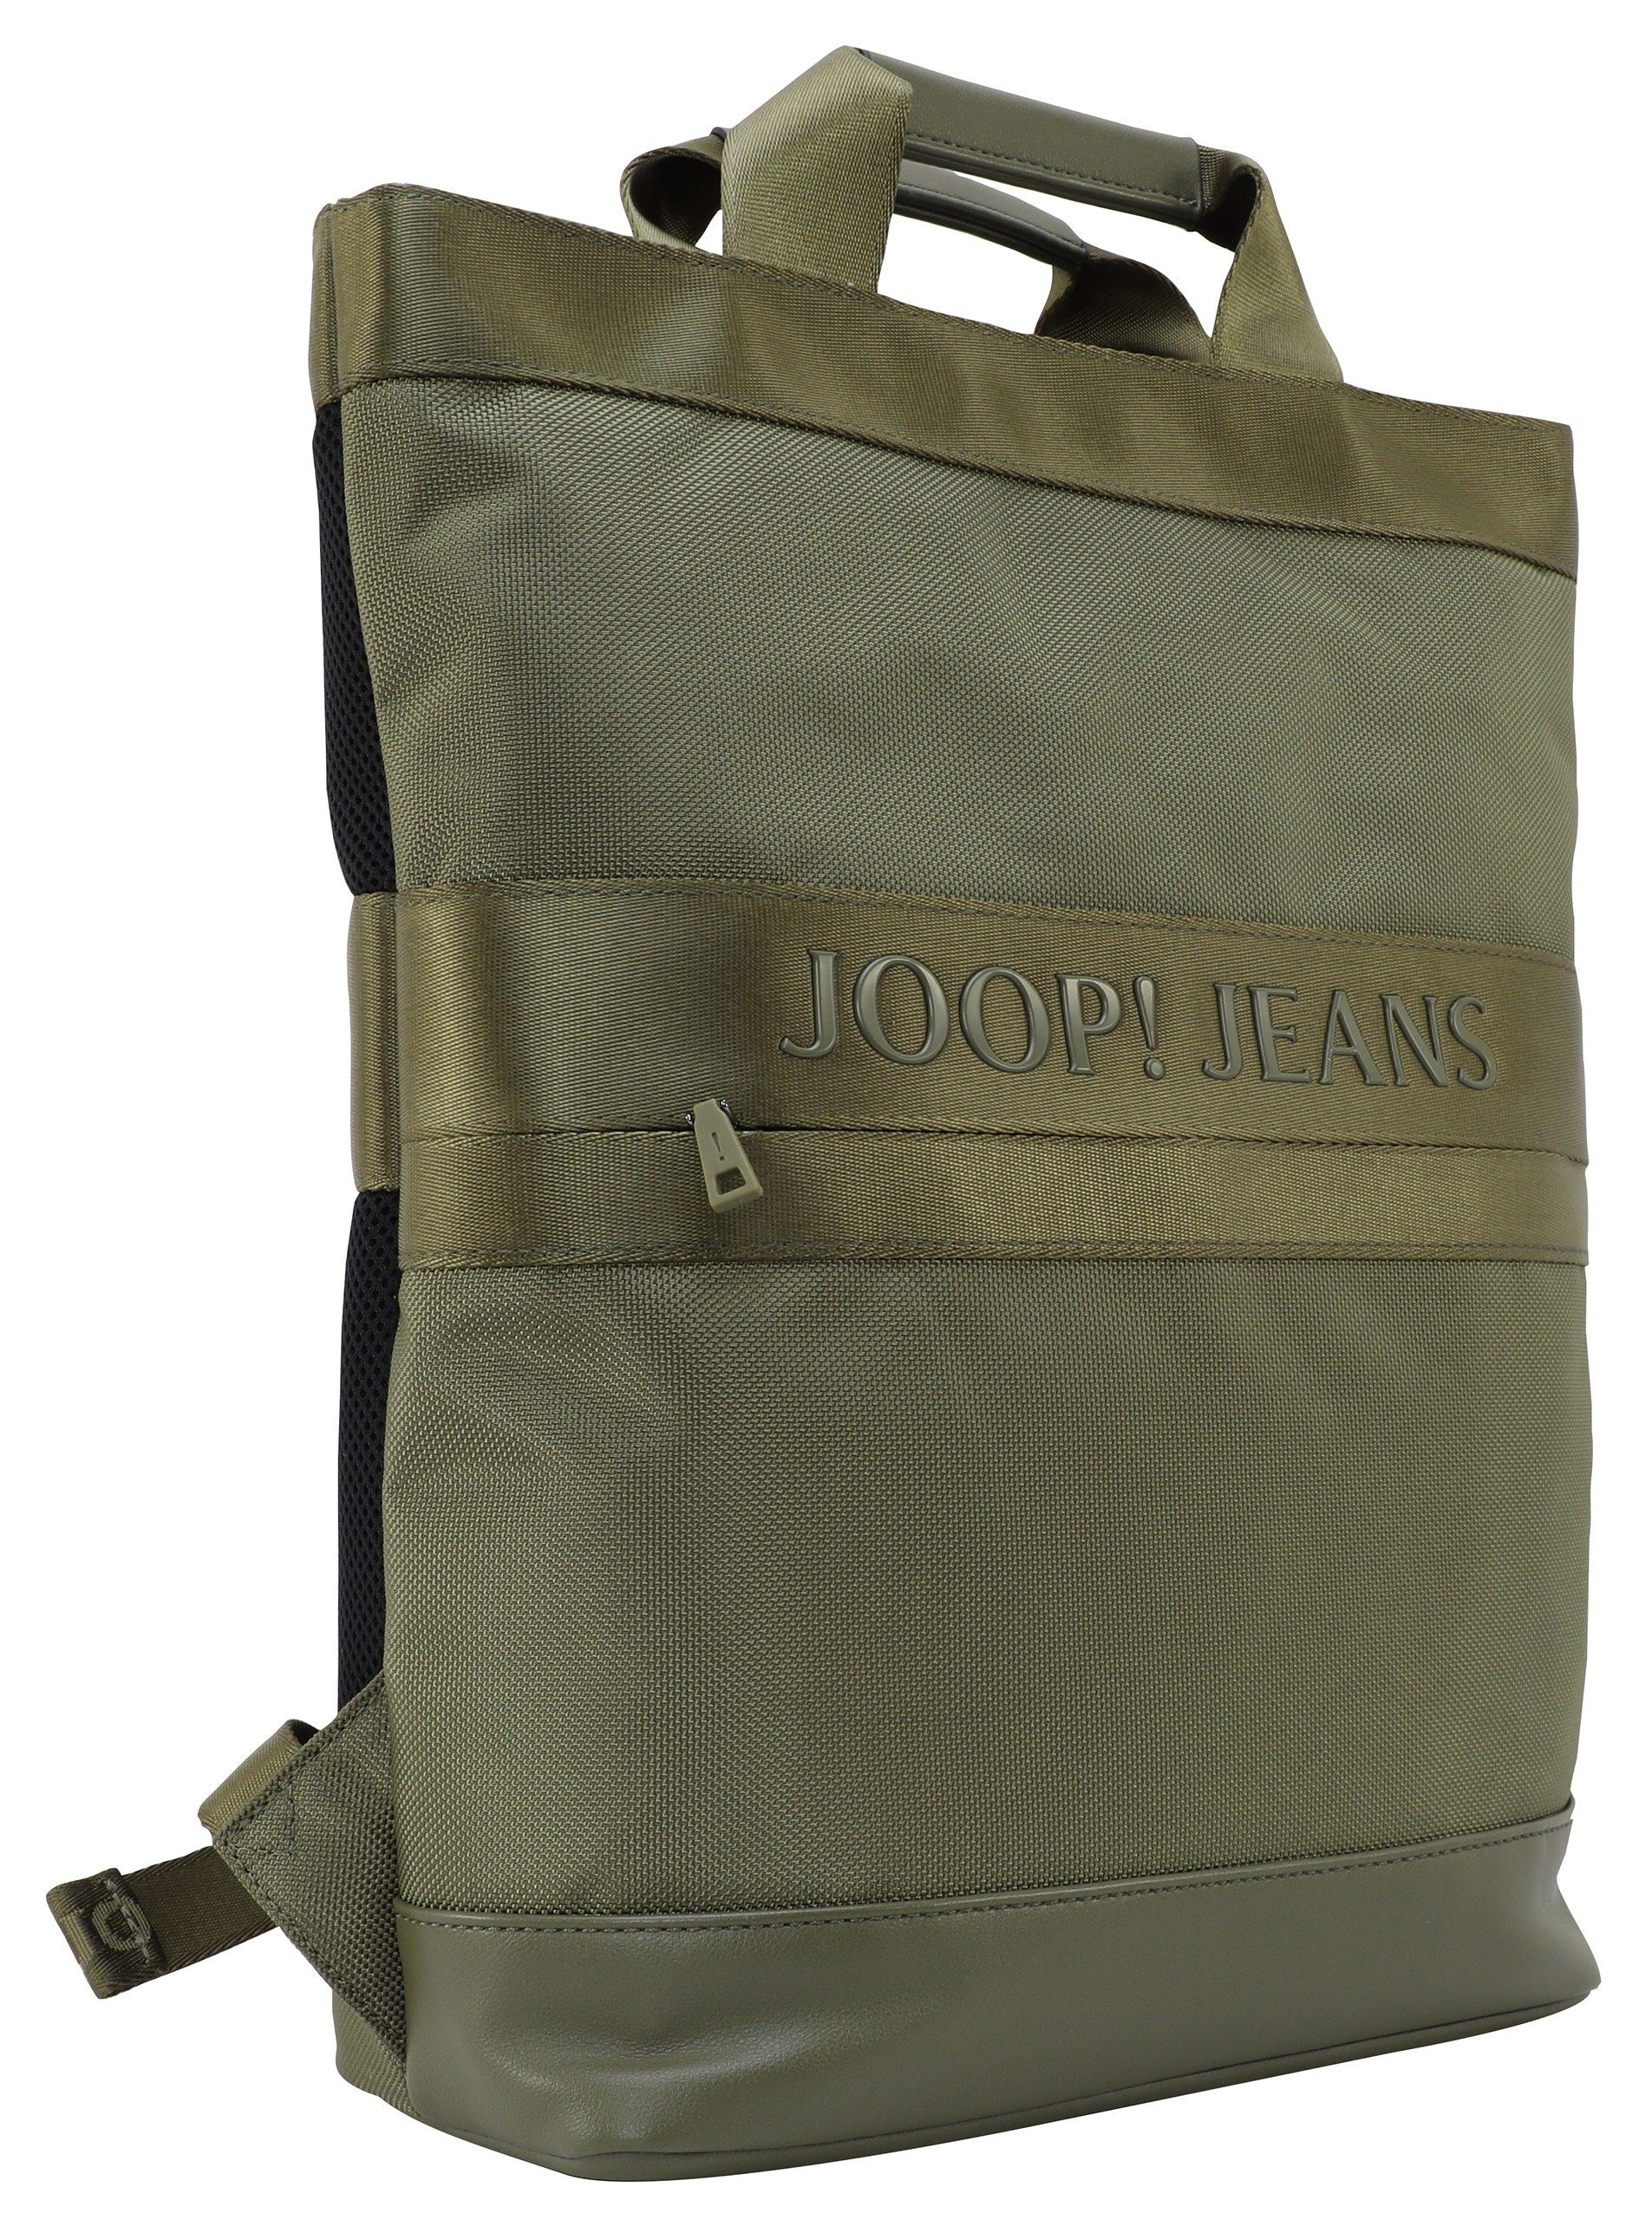 Cityrucksack forest Reißverschluss-Vortasche svz, backpack modica falk night Joop mit Jeans